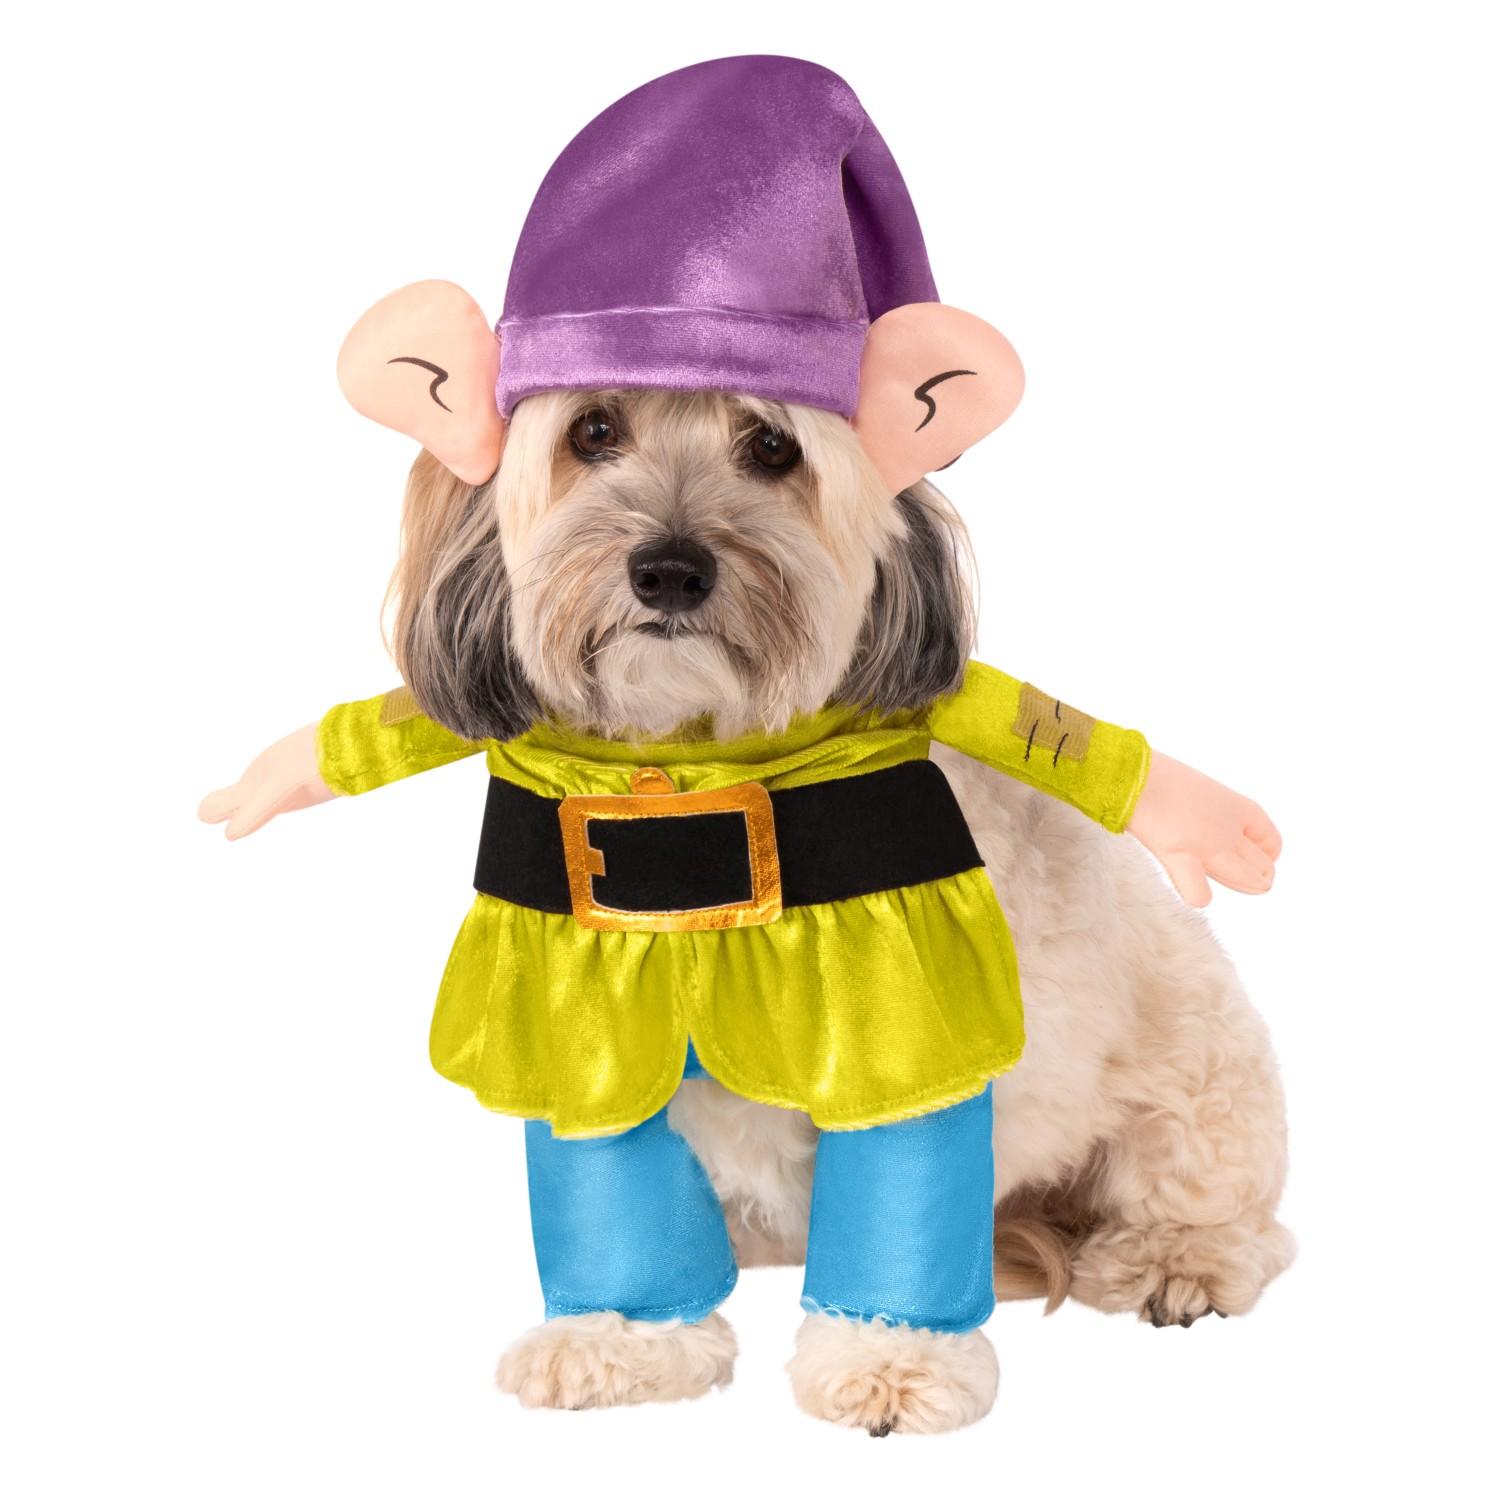 Snow White's Dopey Dwarf Dog Costume by Rubie's